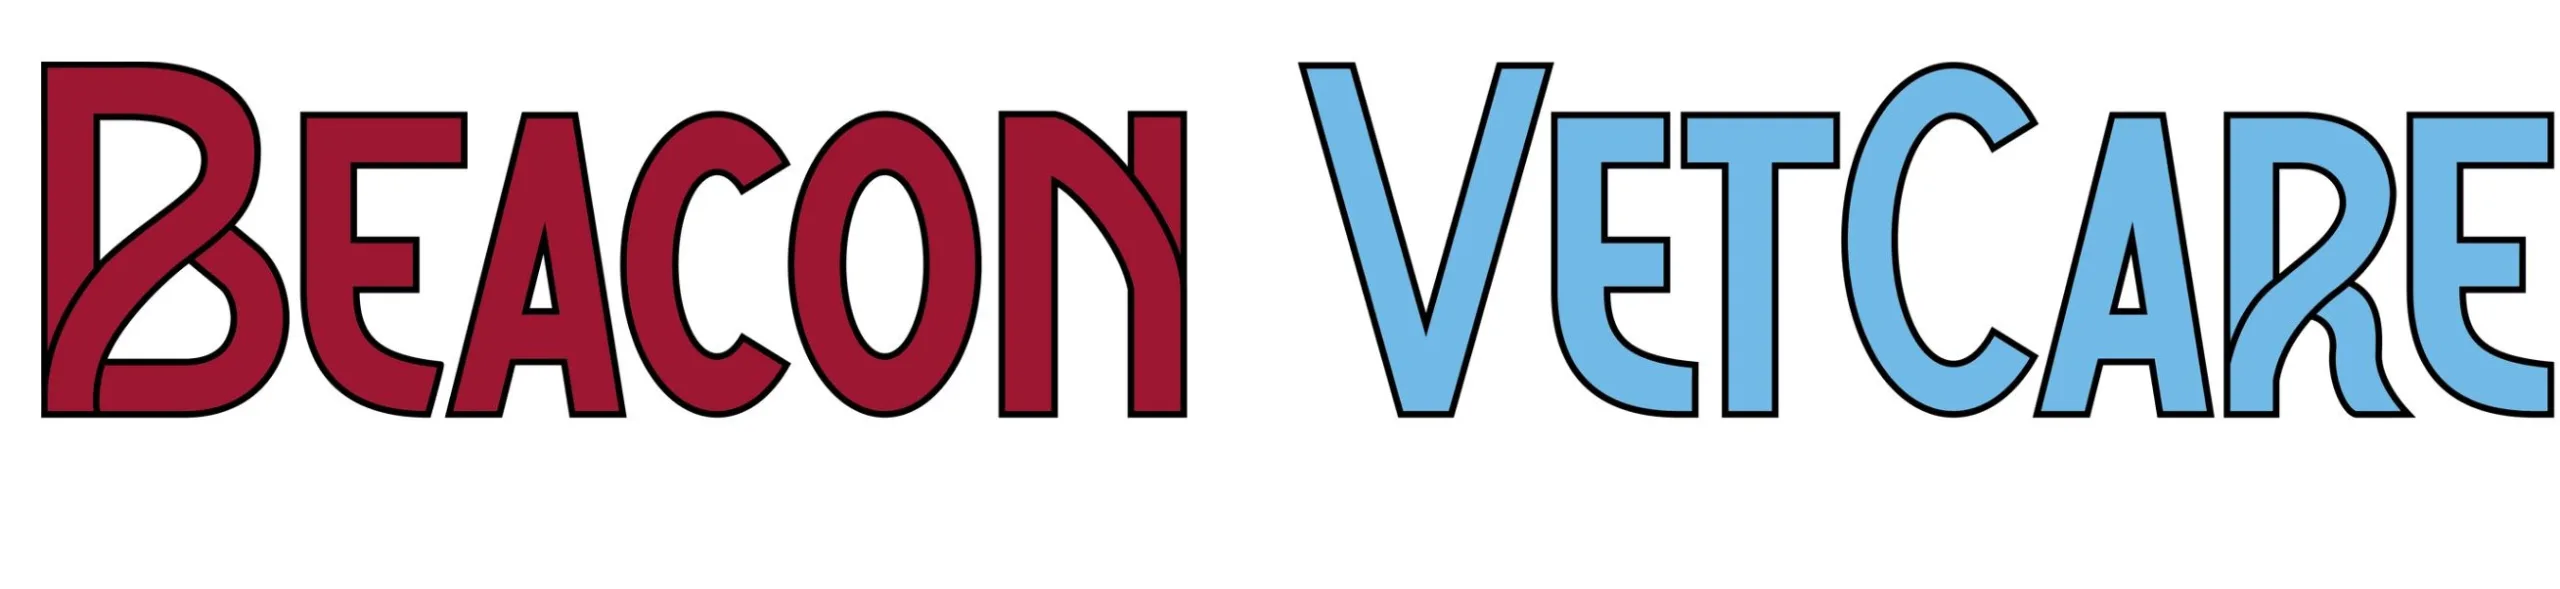 beacon vetcare logo